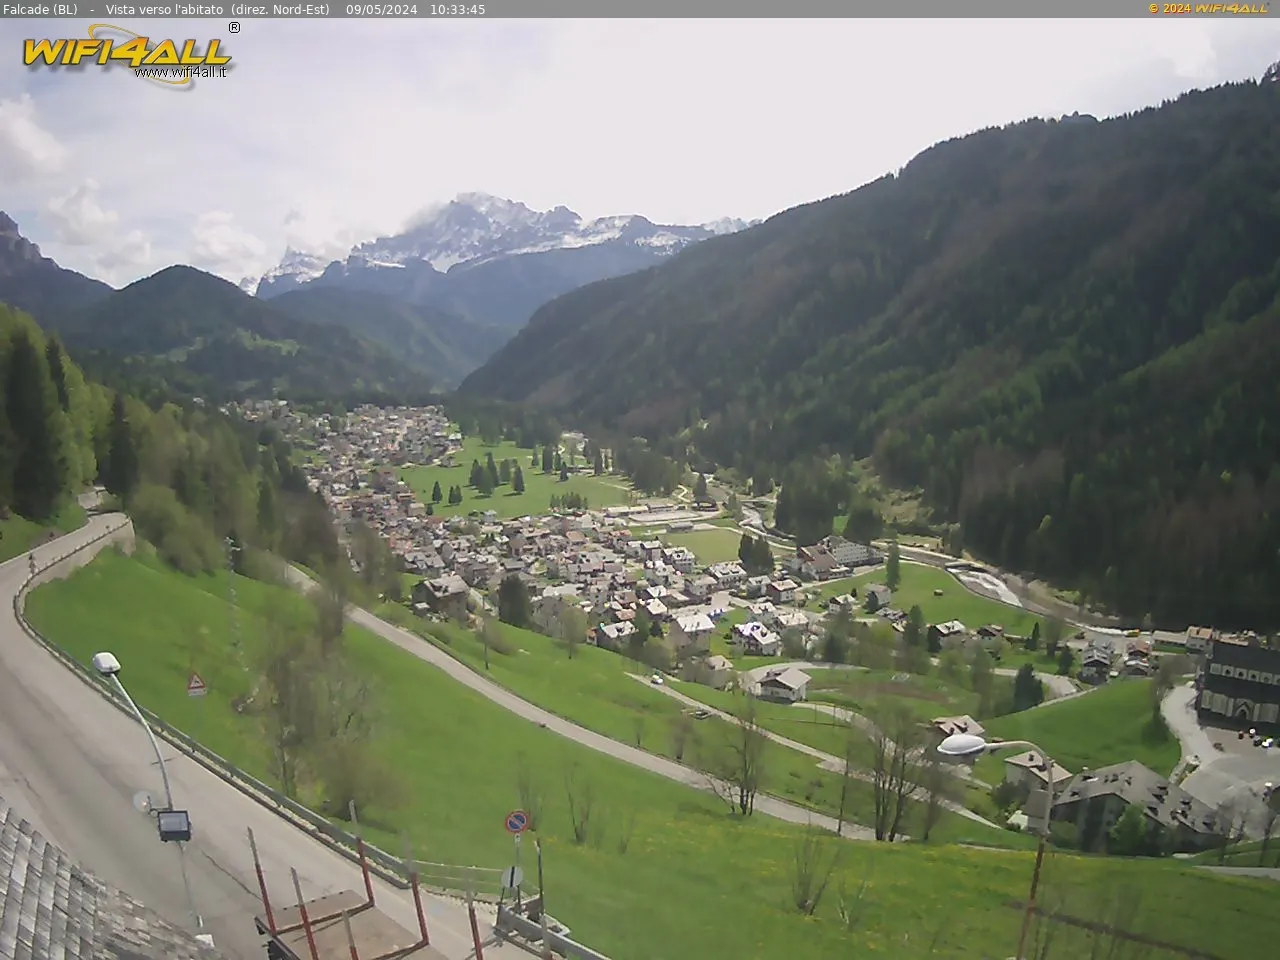 webcam Falcade,  webcam provincia di Belluno, 
                                            webcam Veneto, webcam alpi